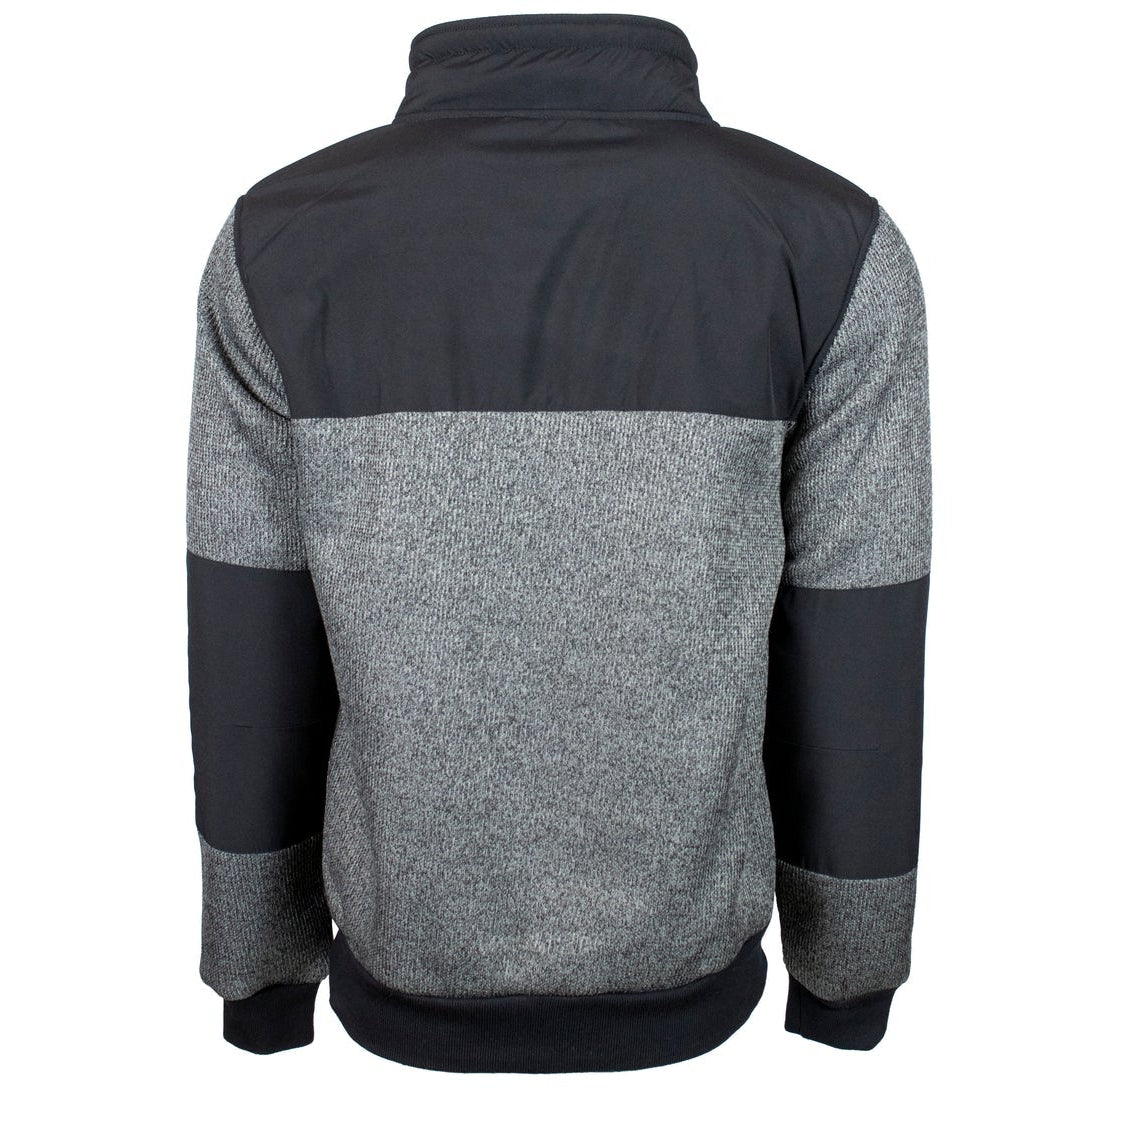 Hooey Sweater Zip Up Grey/Black w/Black Fleece Ling